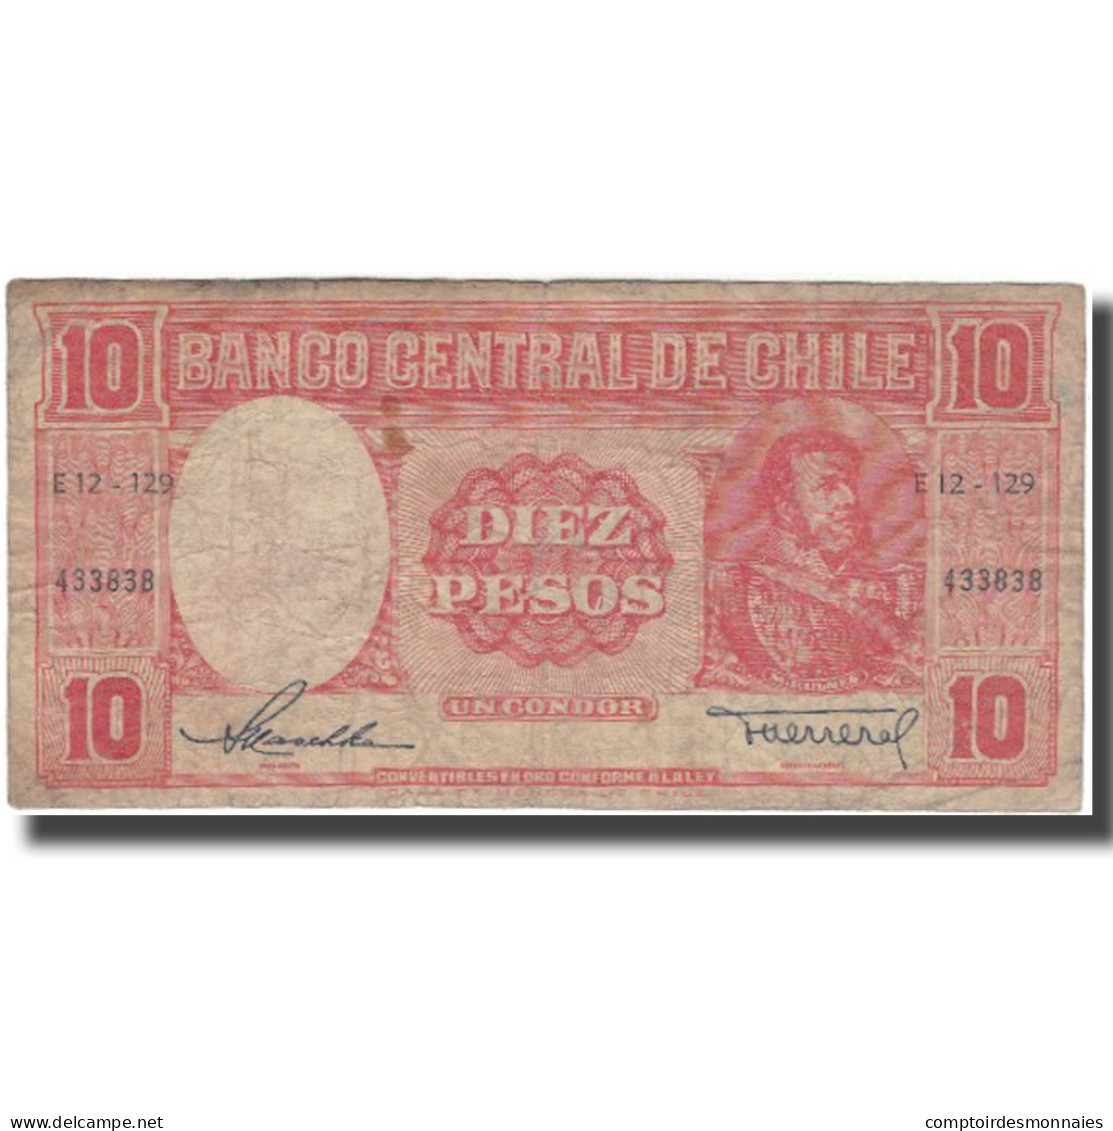 Billet, Chile, 10 Pesos = 1 Condor, KM:120, B - Chili